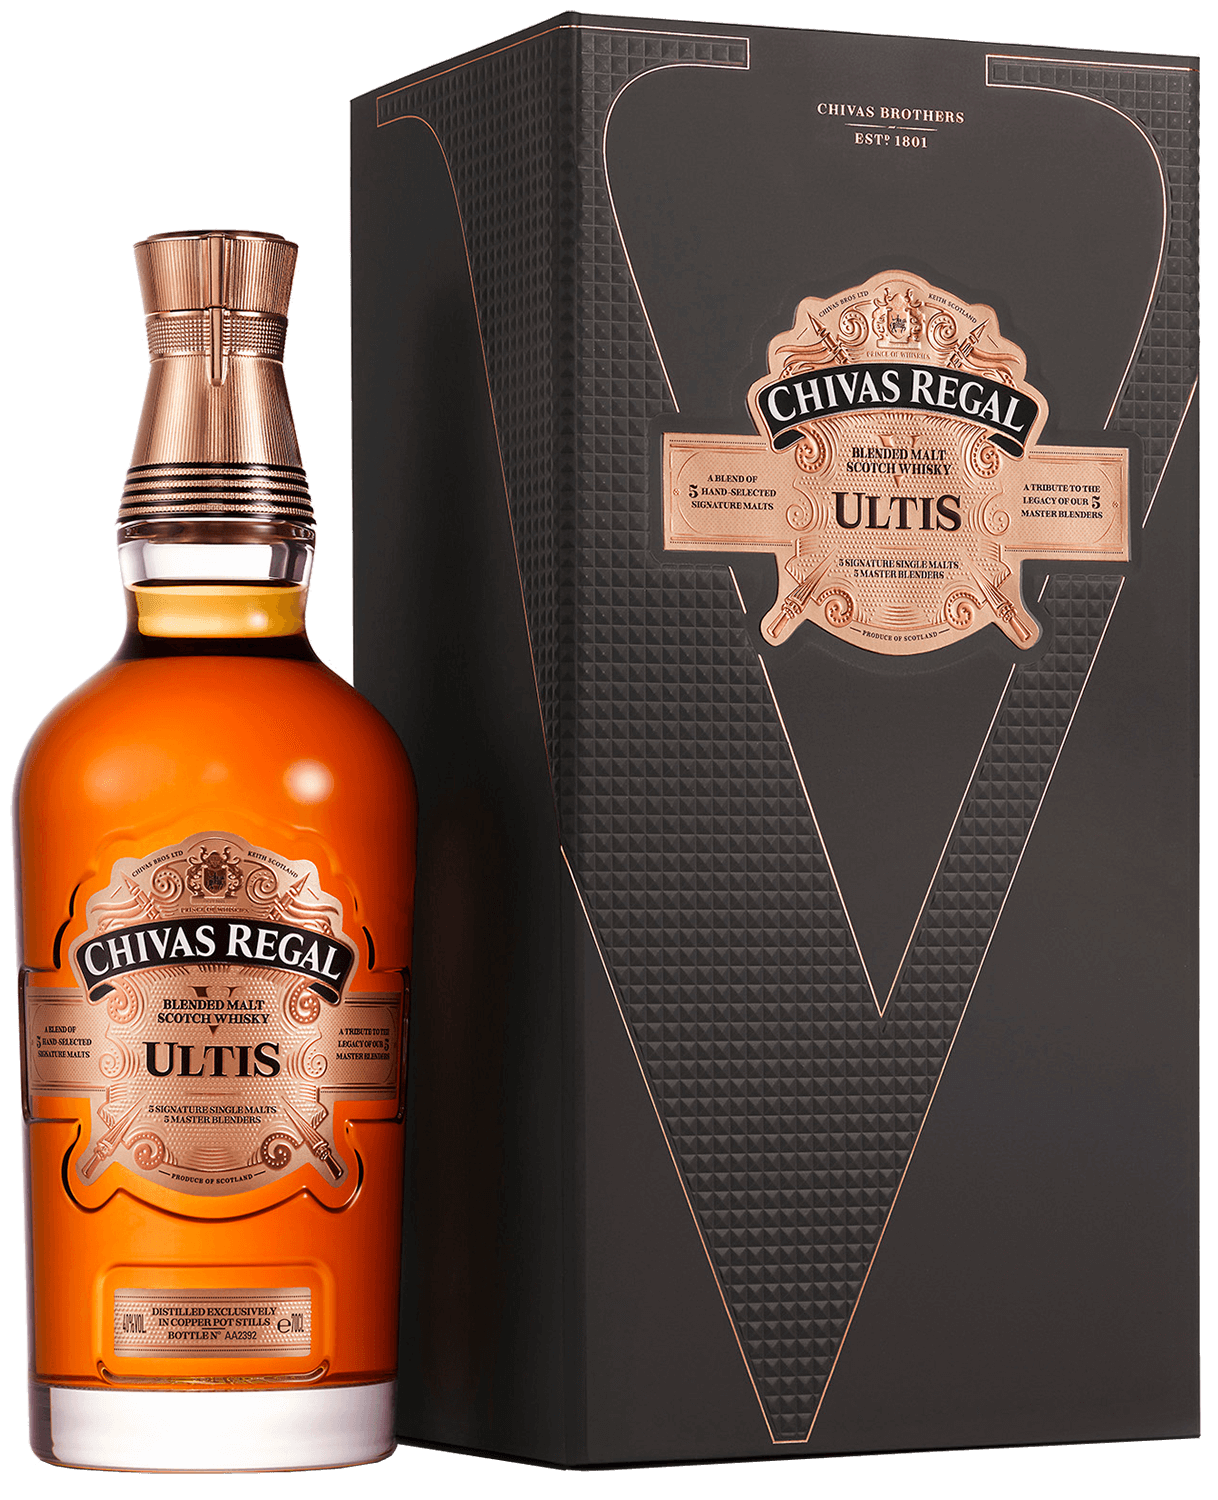 Chivas Regal Ultis Blended Malt Scotch Whisky (gift box)